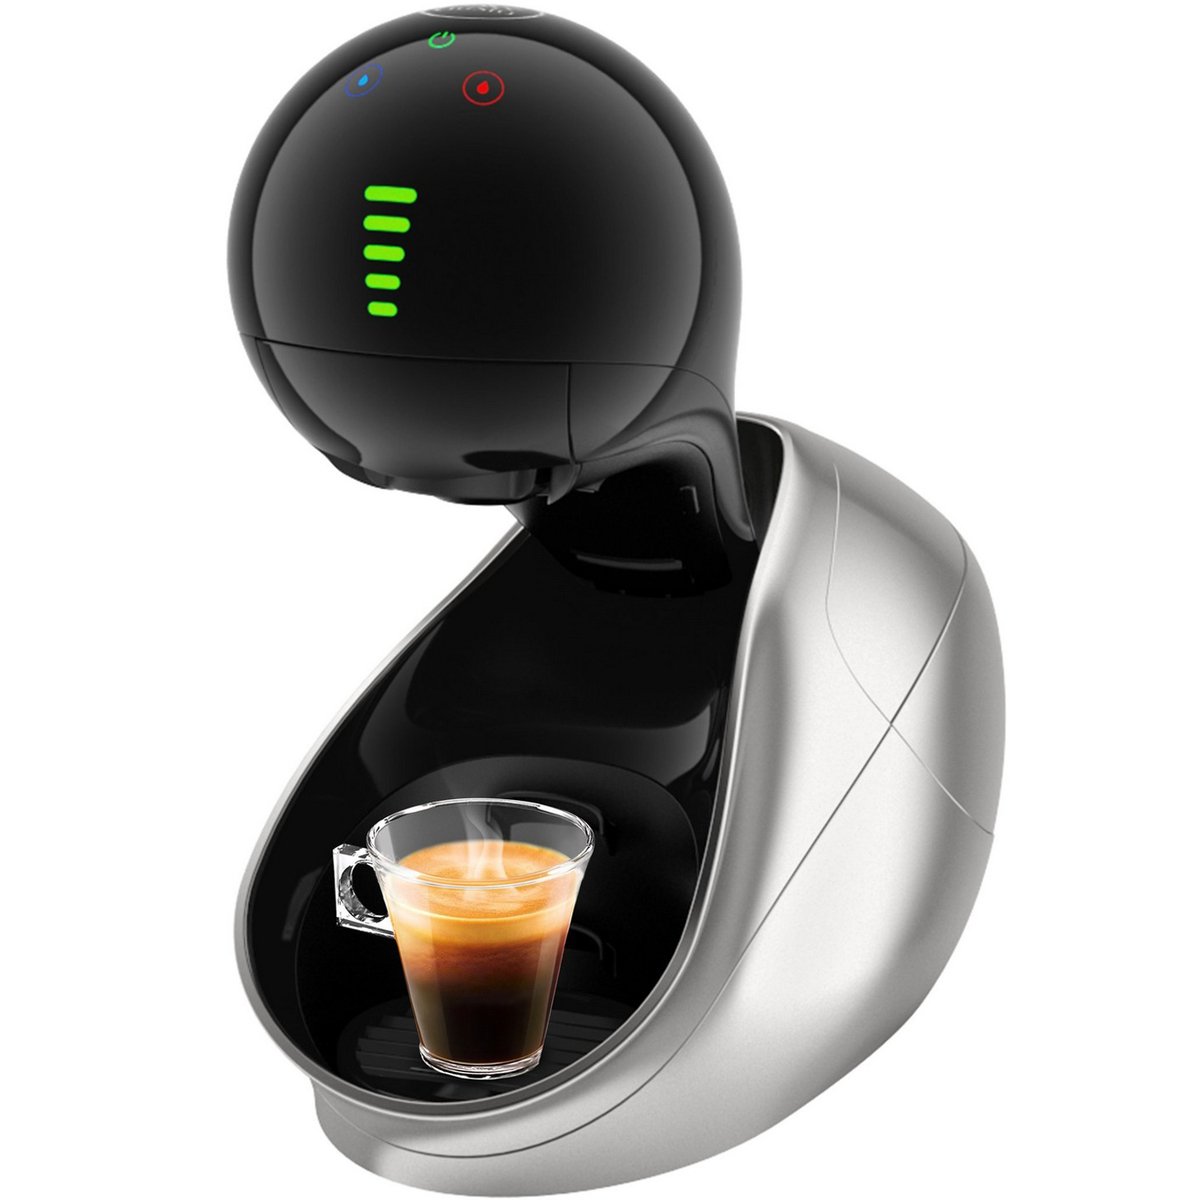 Nescafe Dolce Gusto Movenza Coffee Machine